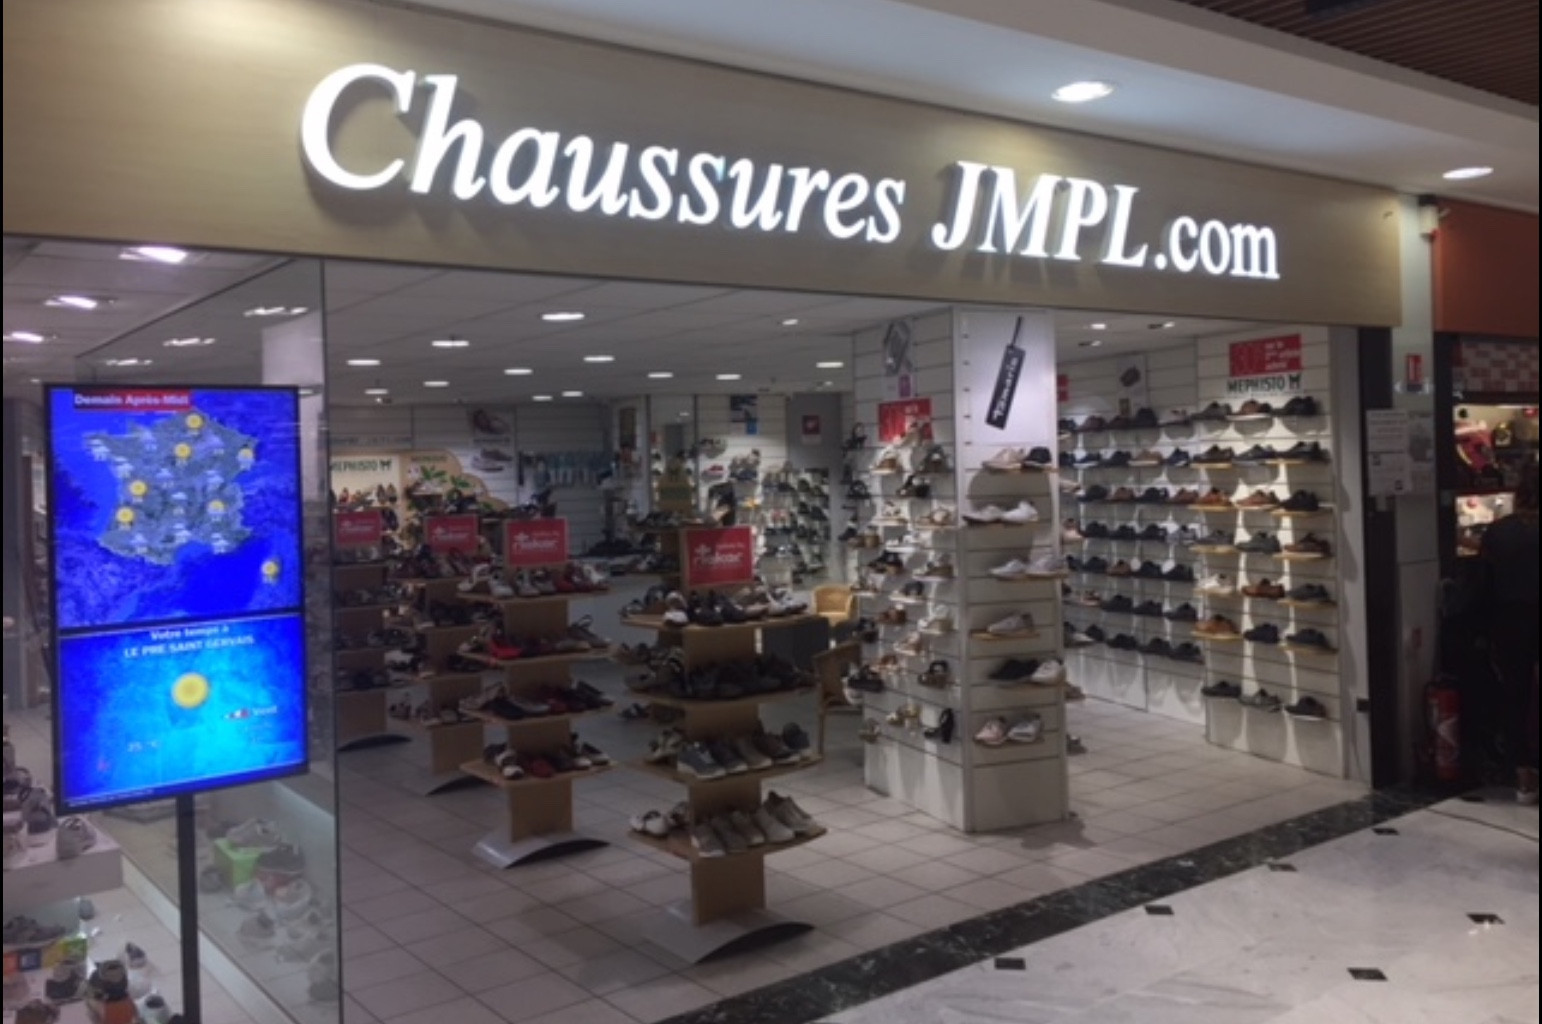 Chaussures JMPL